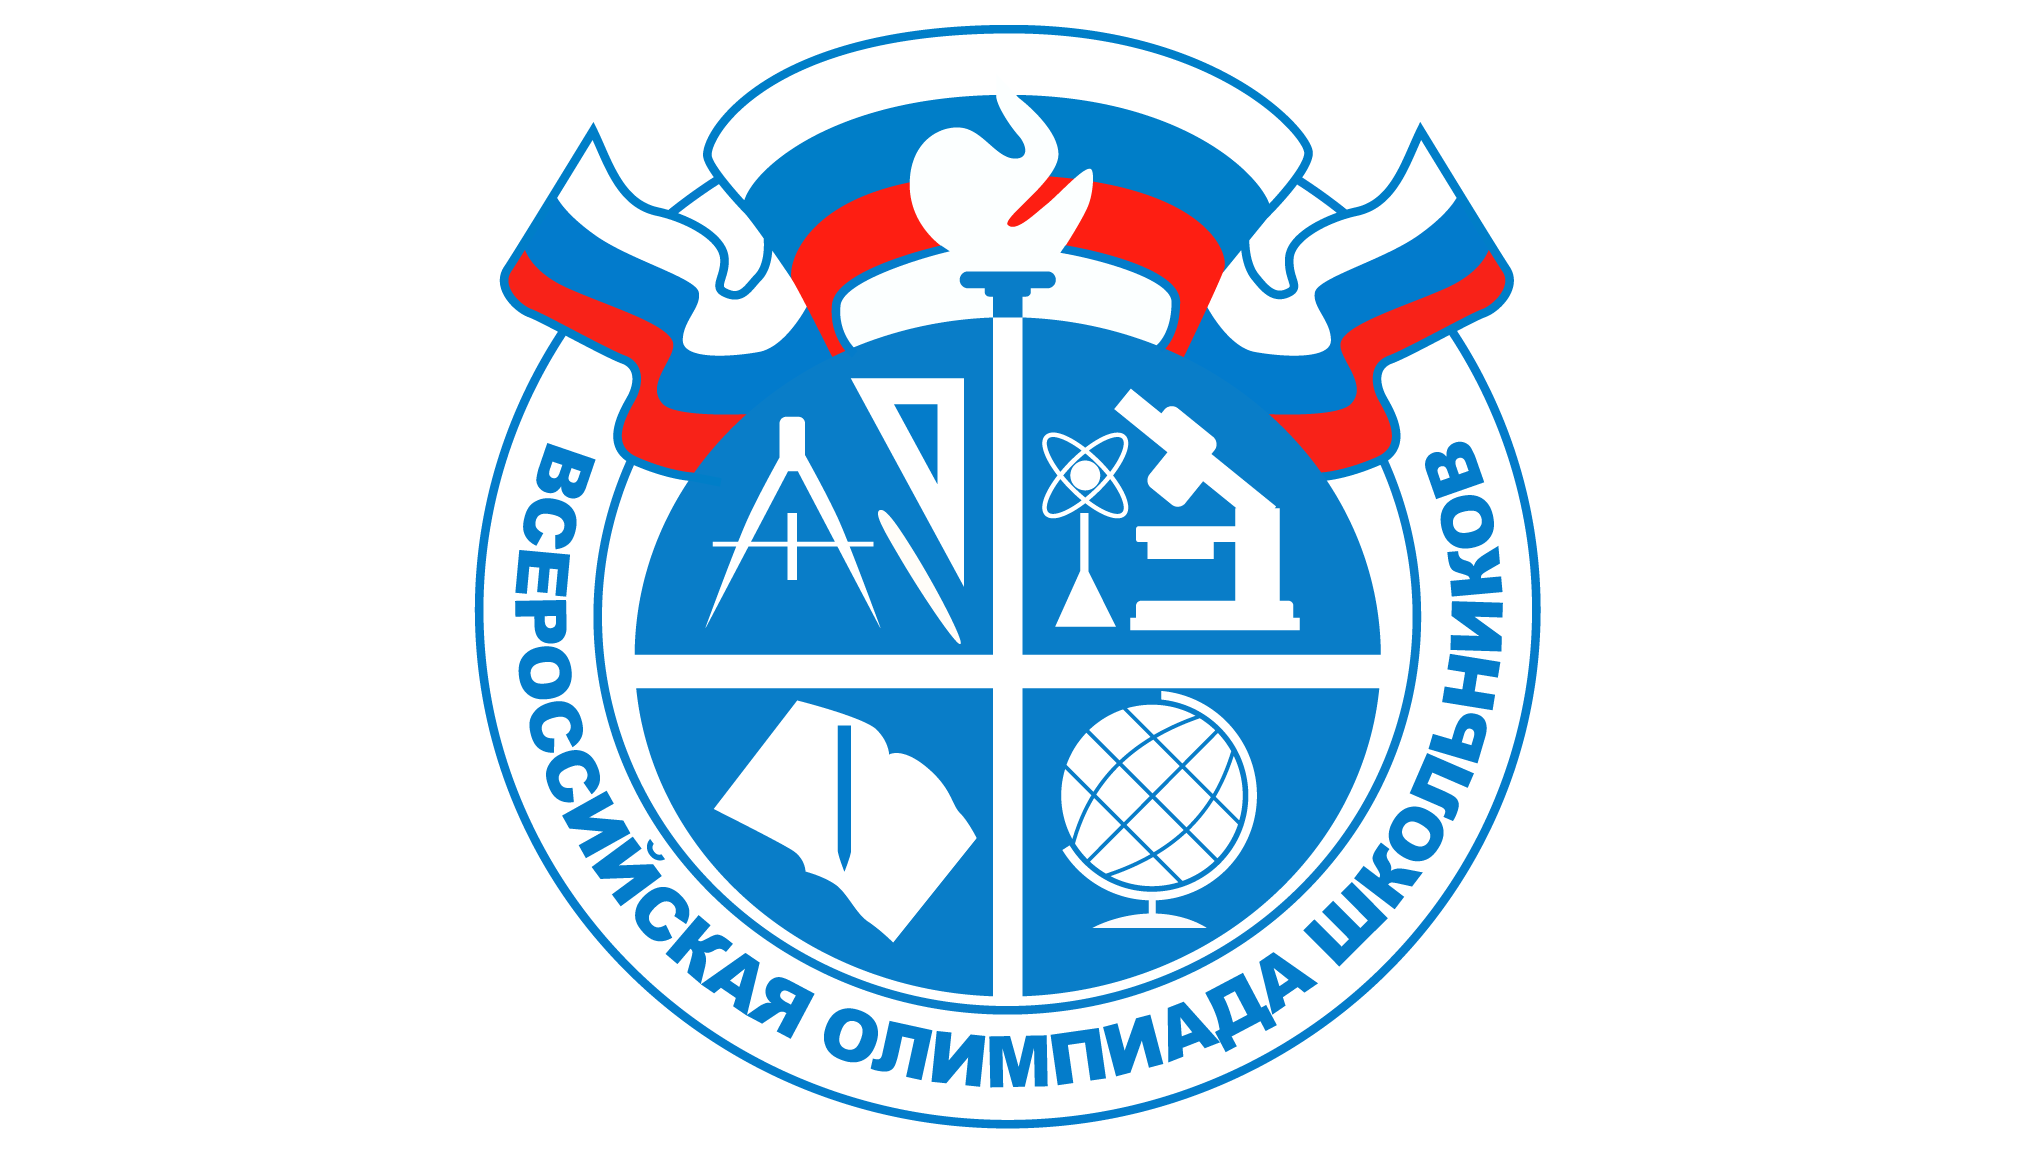 Контакты «Горячей линии» по вопросам организации и проведения всероссийской олимпиады школьников:.